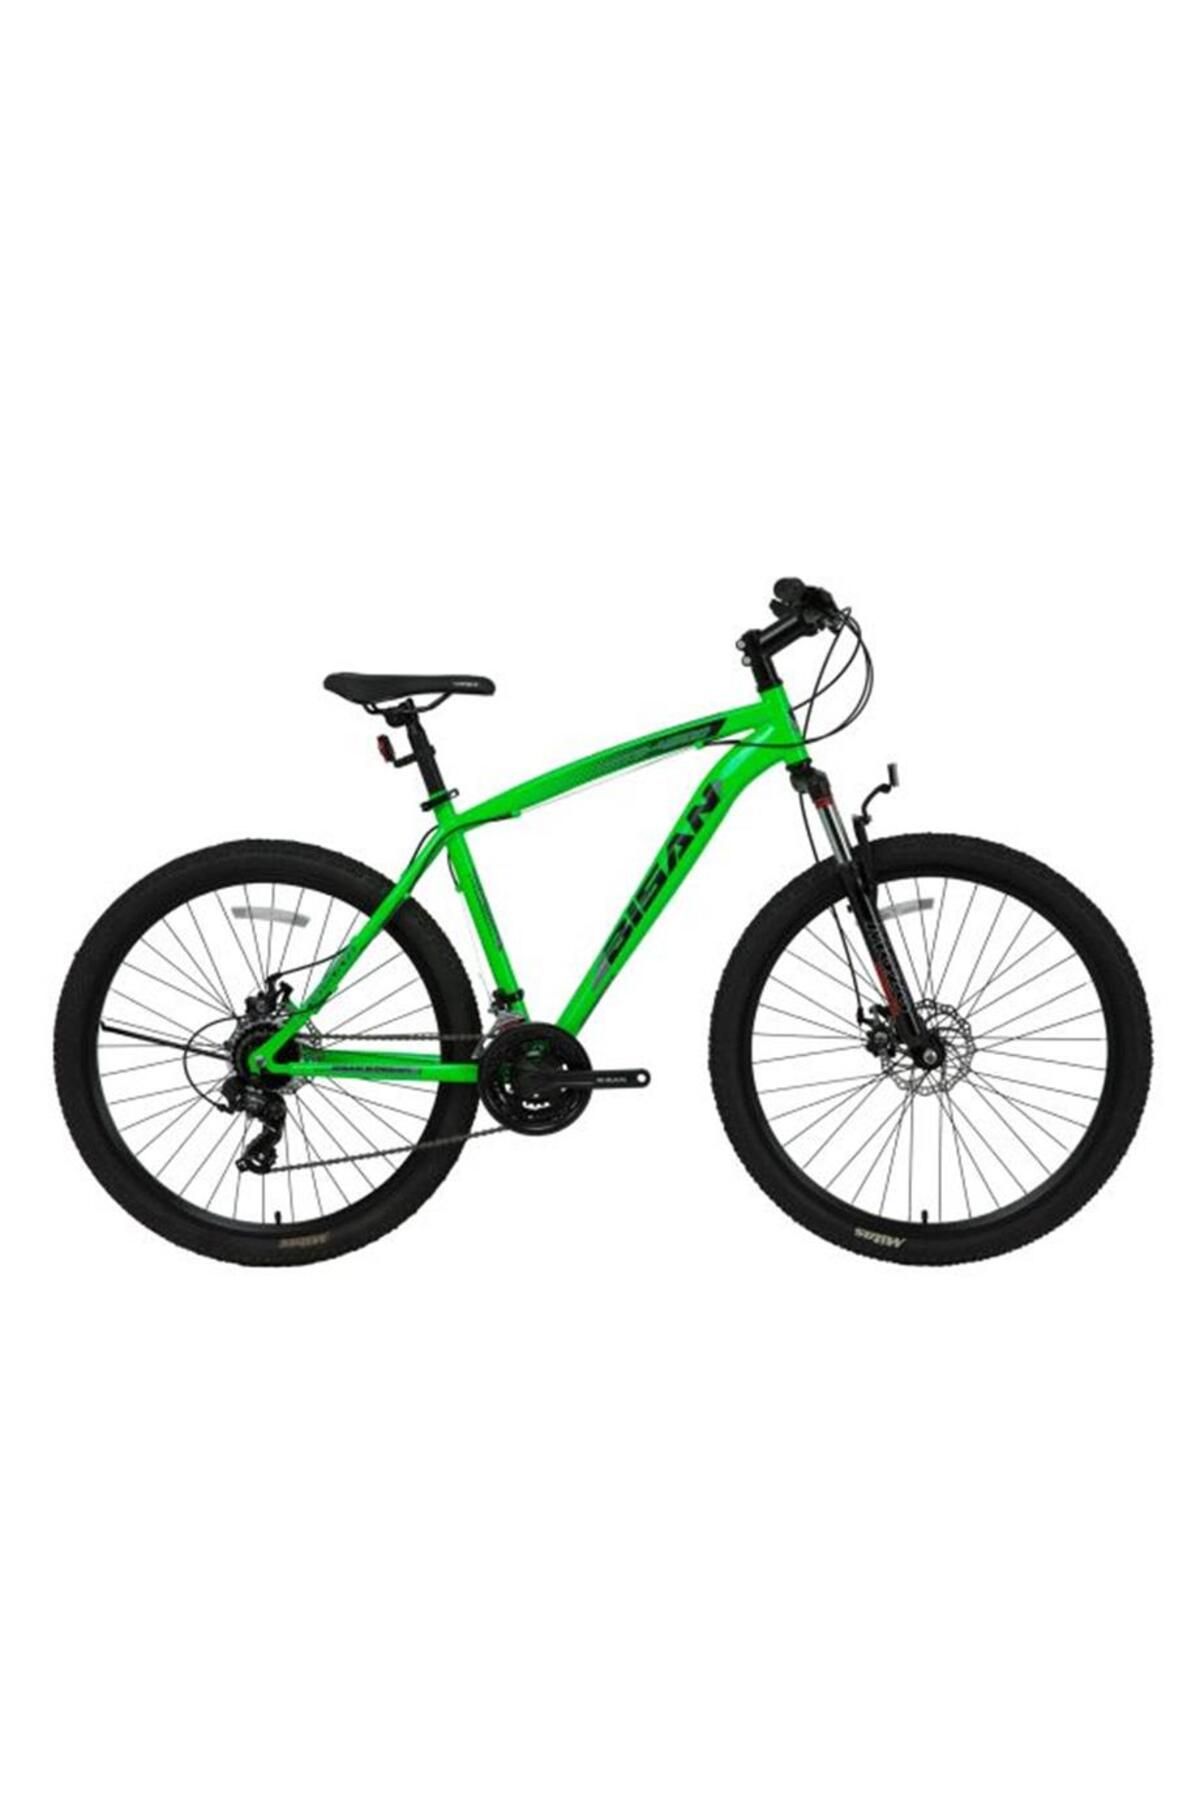 Bisan Mts 4600 Erkek Dağ Bisikleti 48cm Md 29 Jant 21 Vites Yeşil Siyah Gri